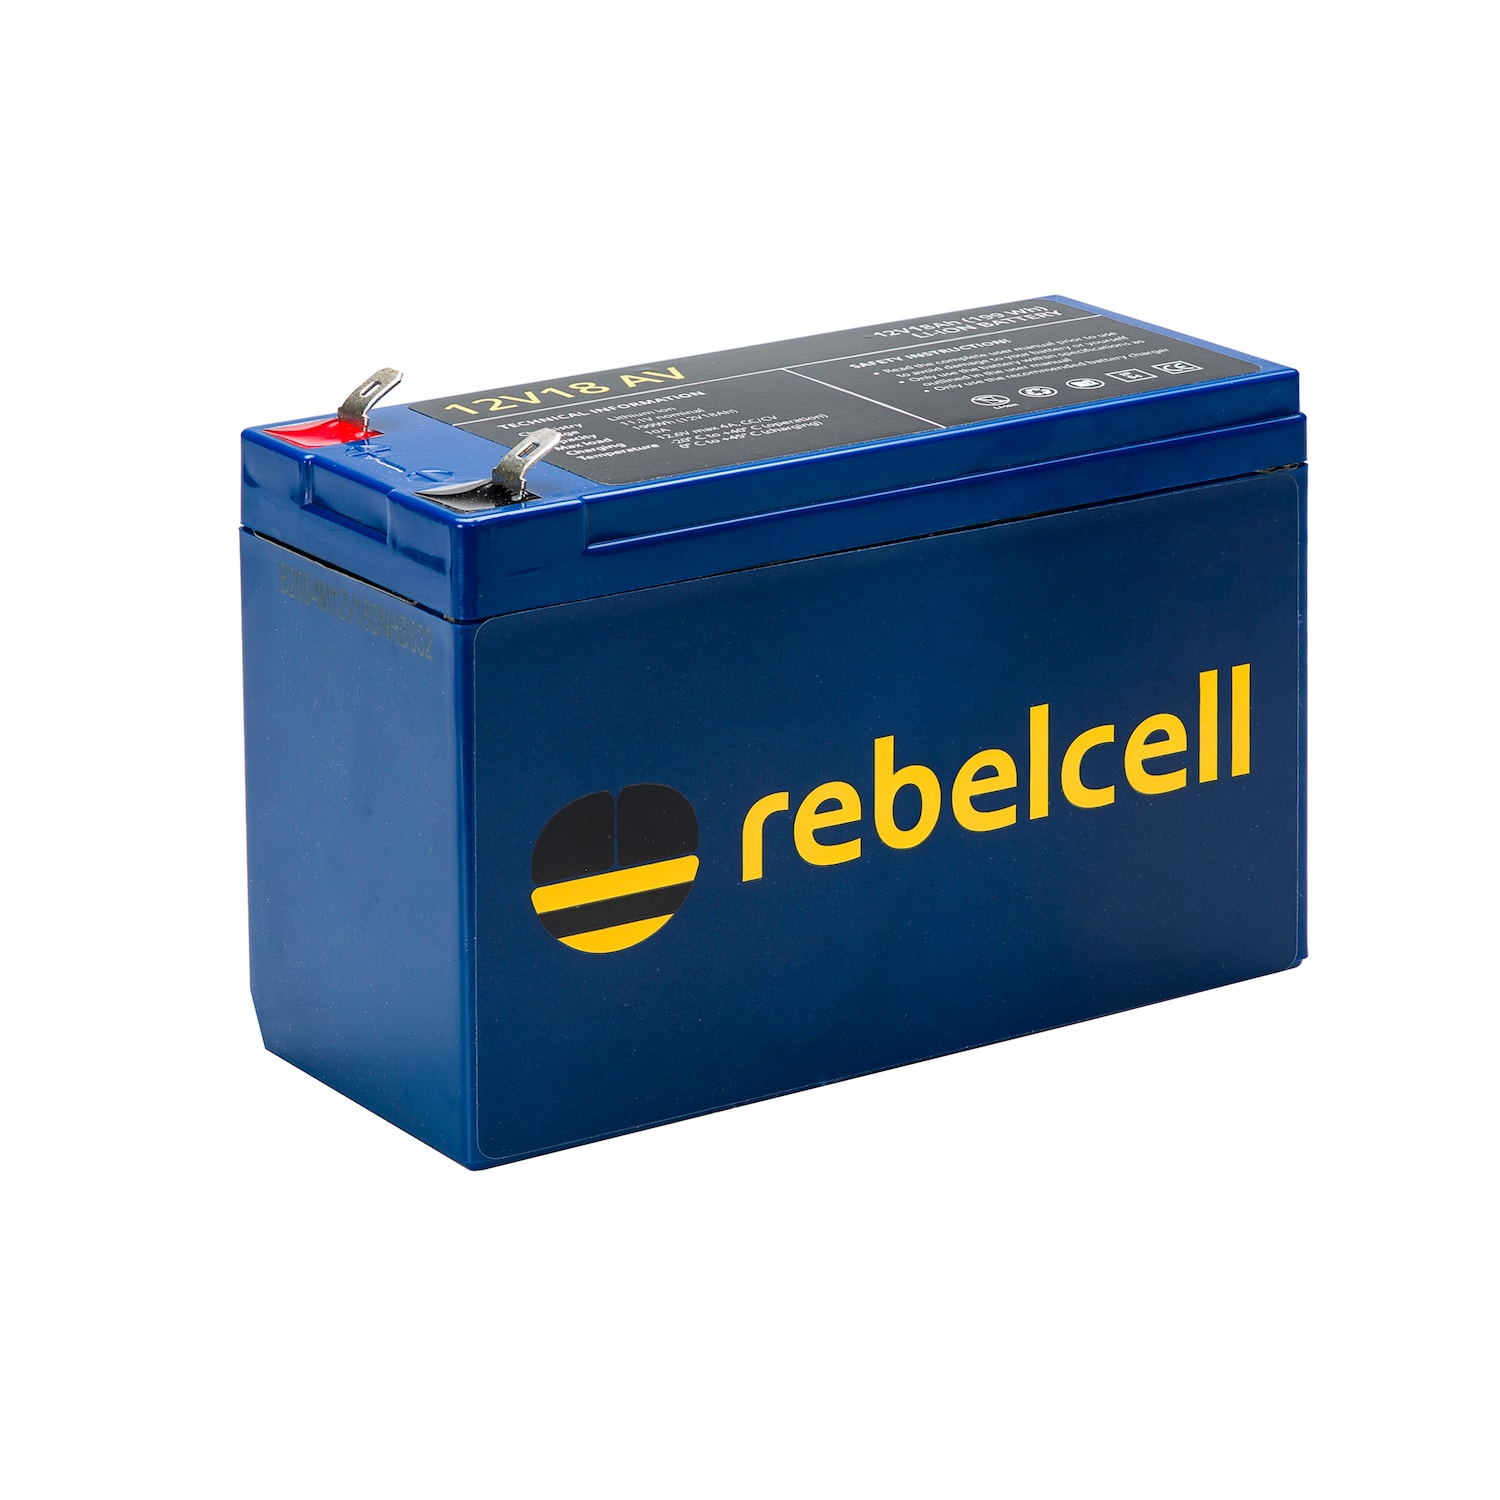 Rebelcell AV li-ion battery (199